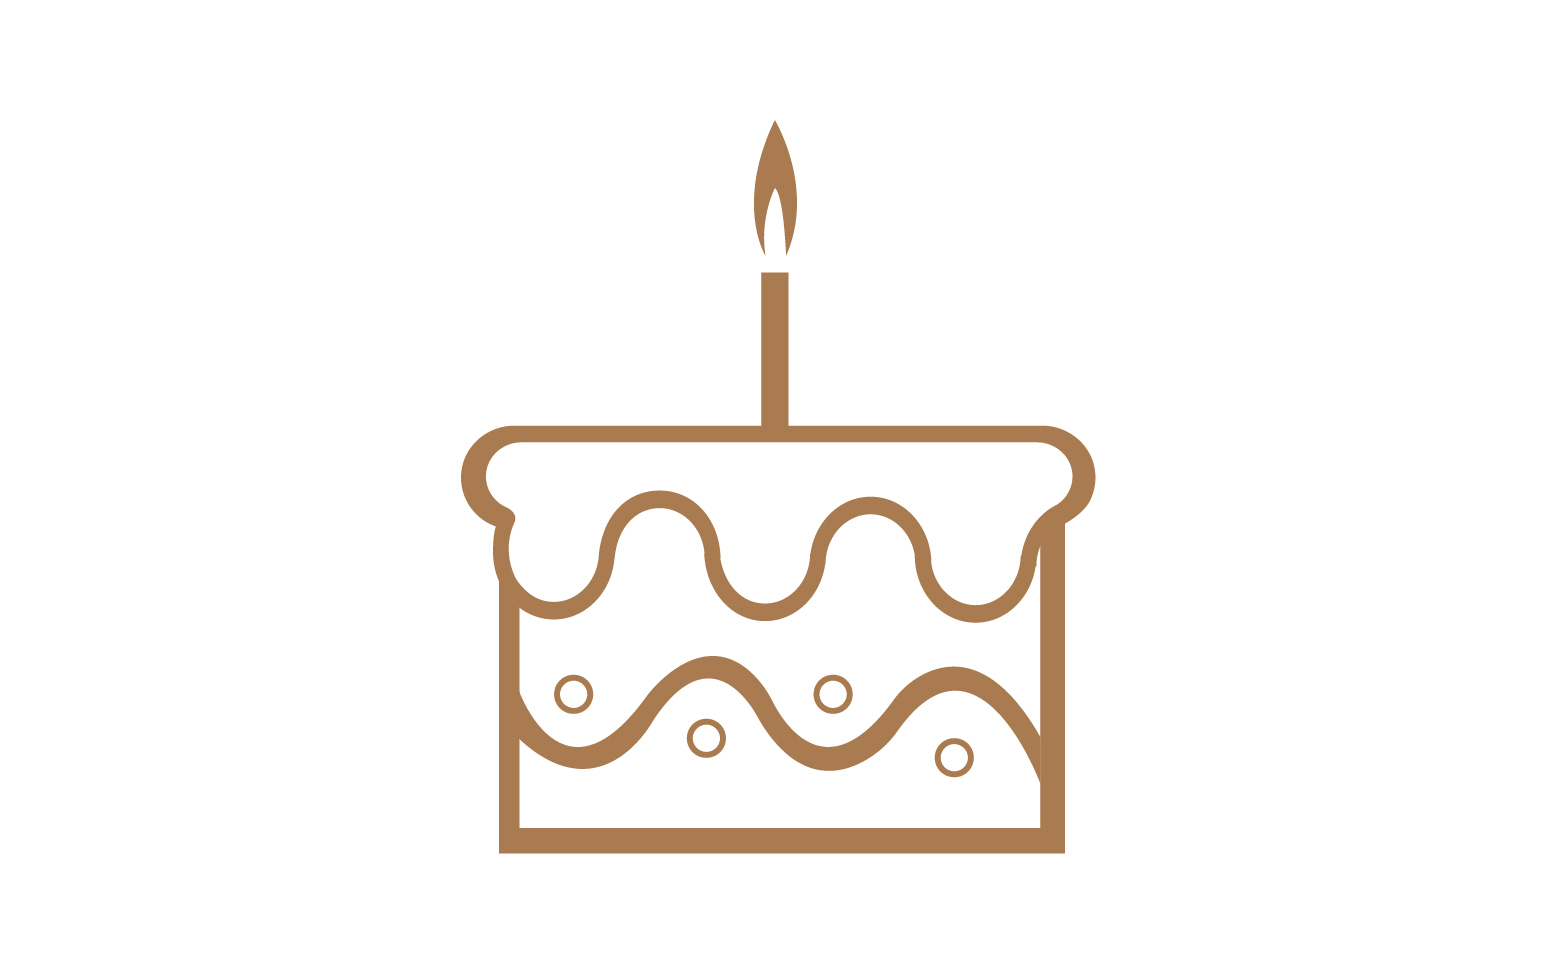 Birthday cake logo icon version v33